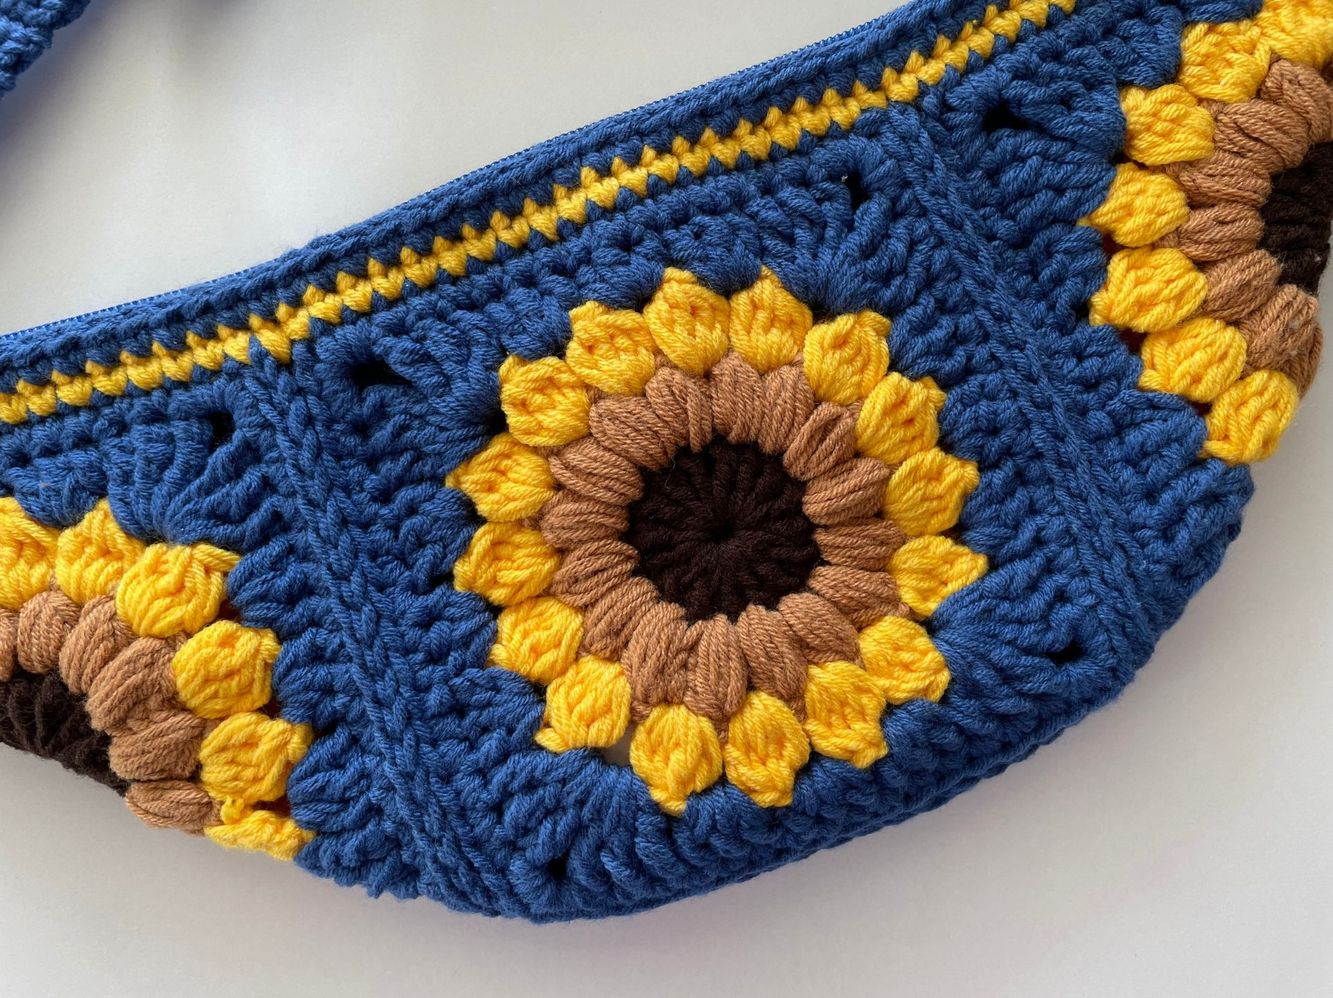 Sunflower sling bag crochet pattern